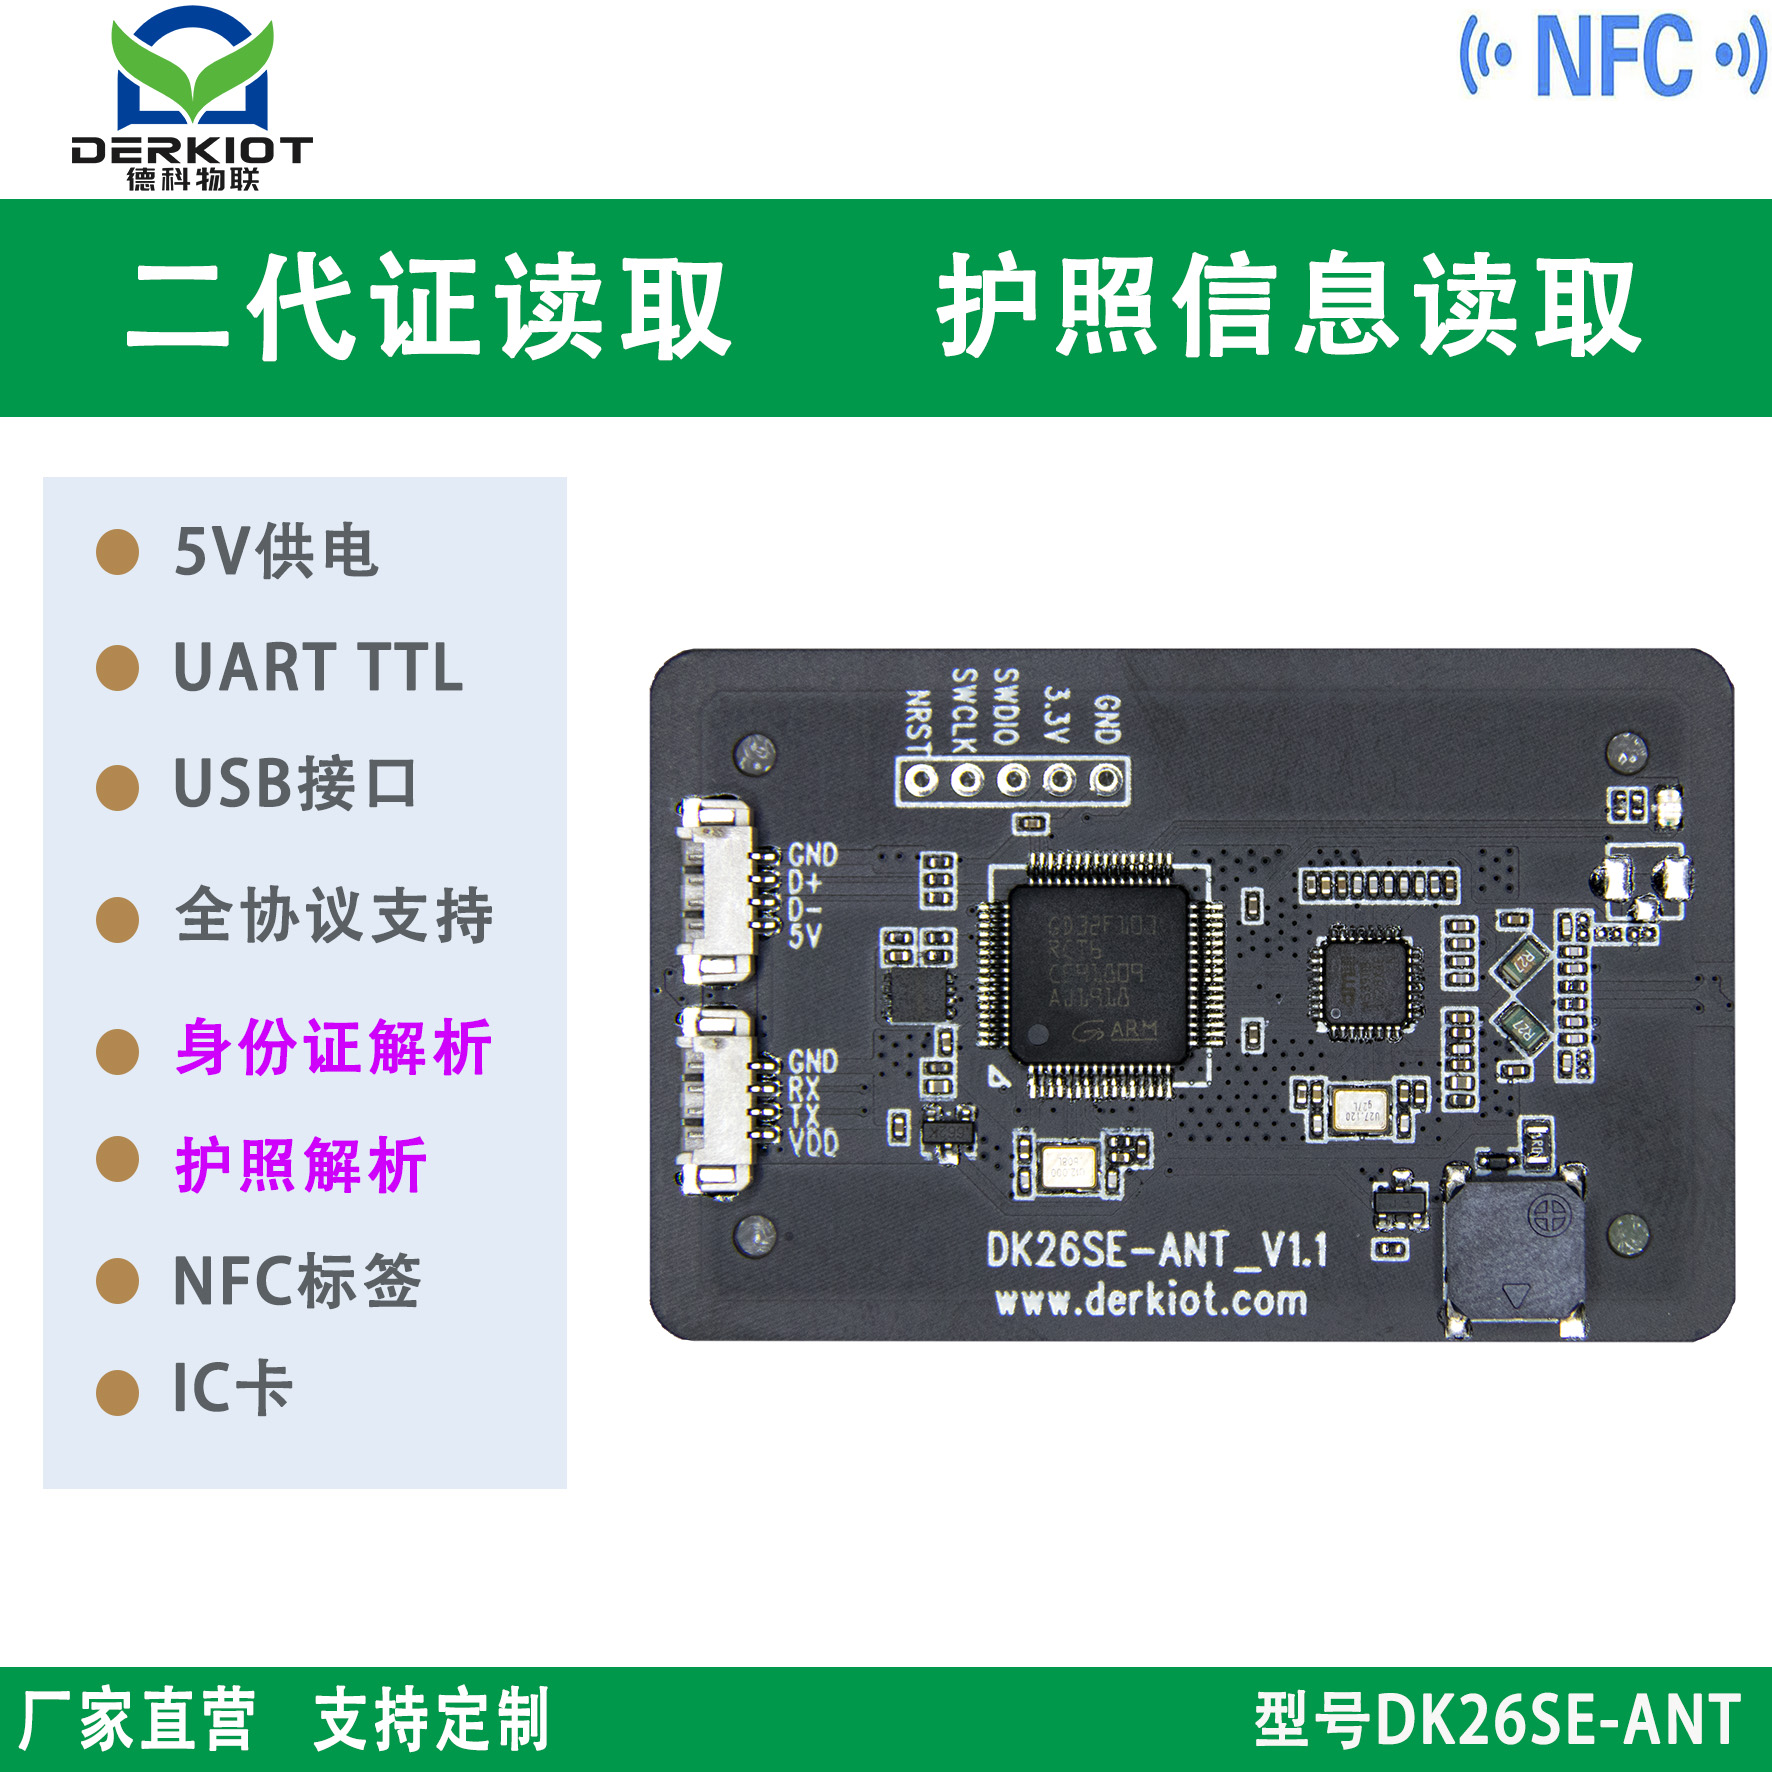 NFC读卡器模块 IC卡读写模块 二代身份证、护照读取模块 云解码读取模块 DK26SE-ANT图片